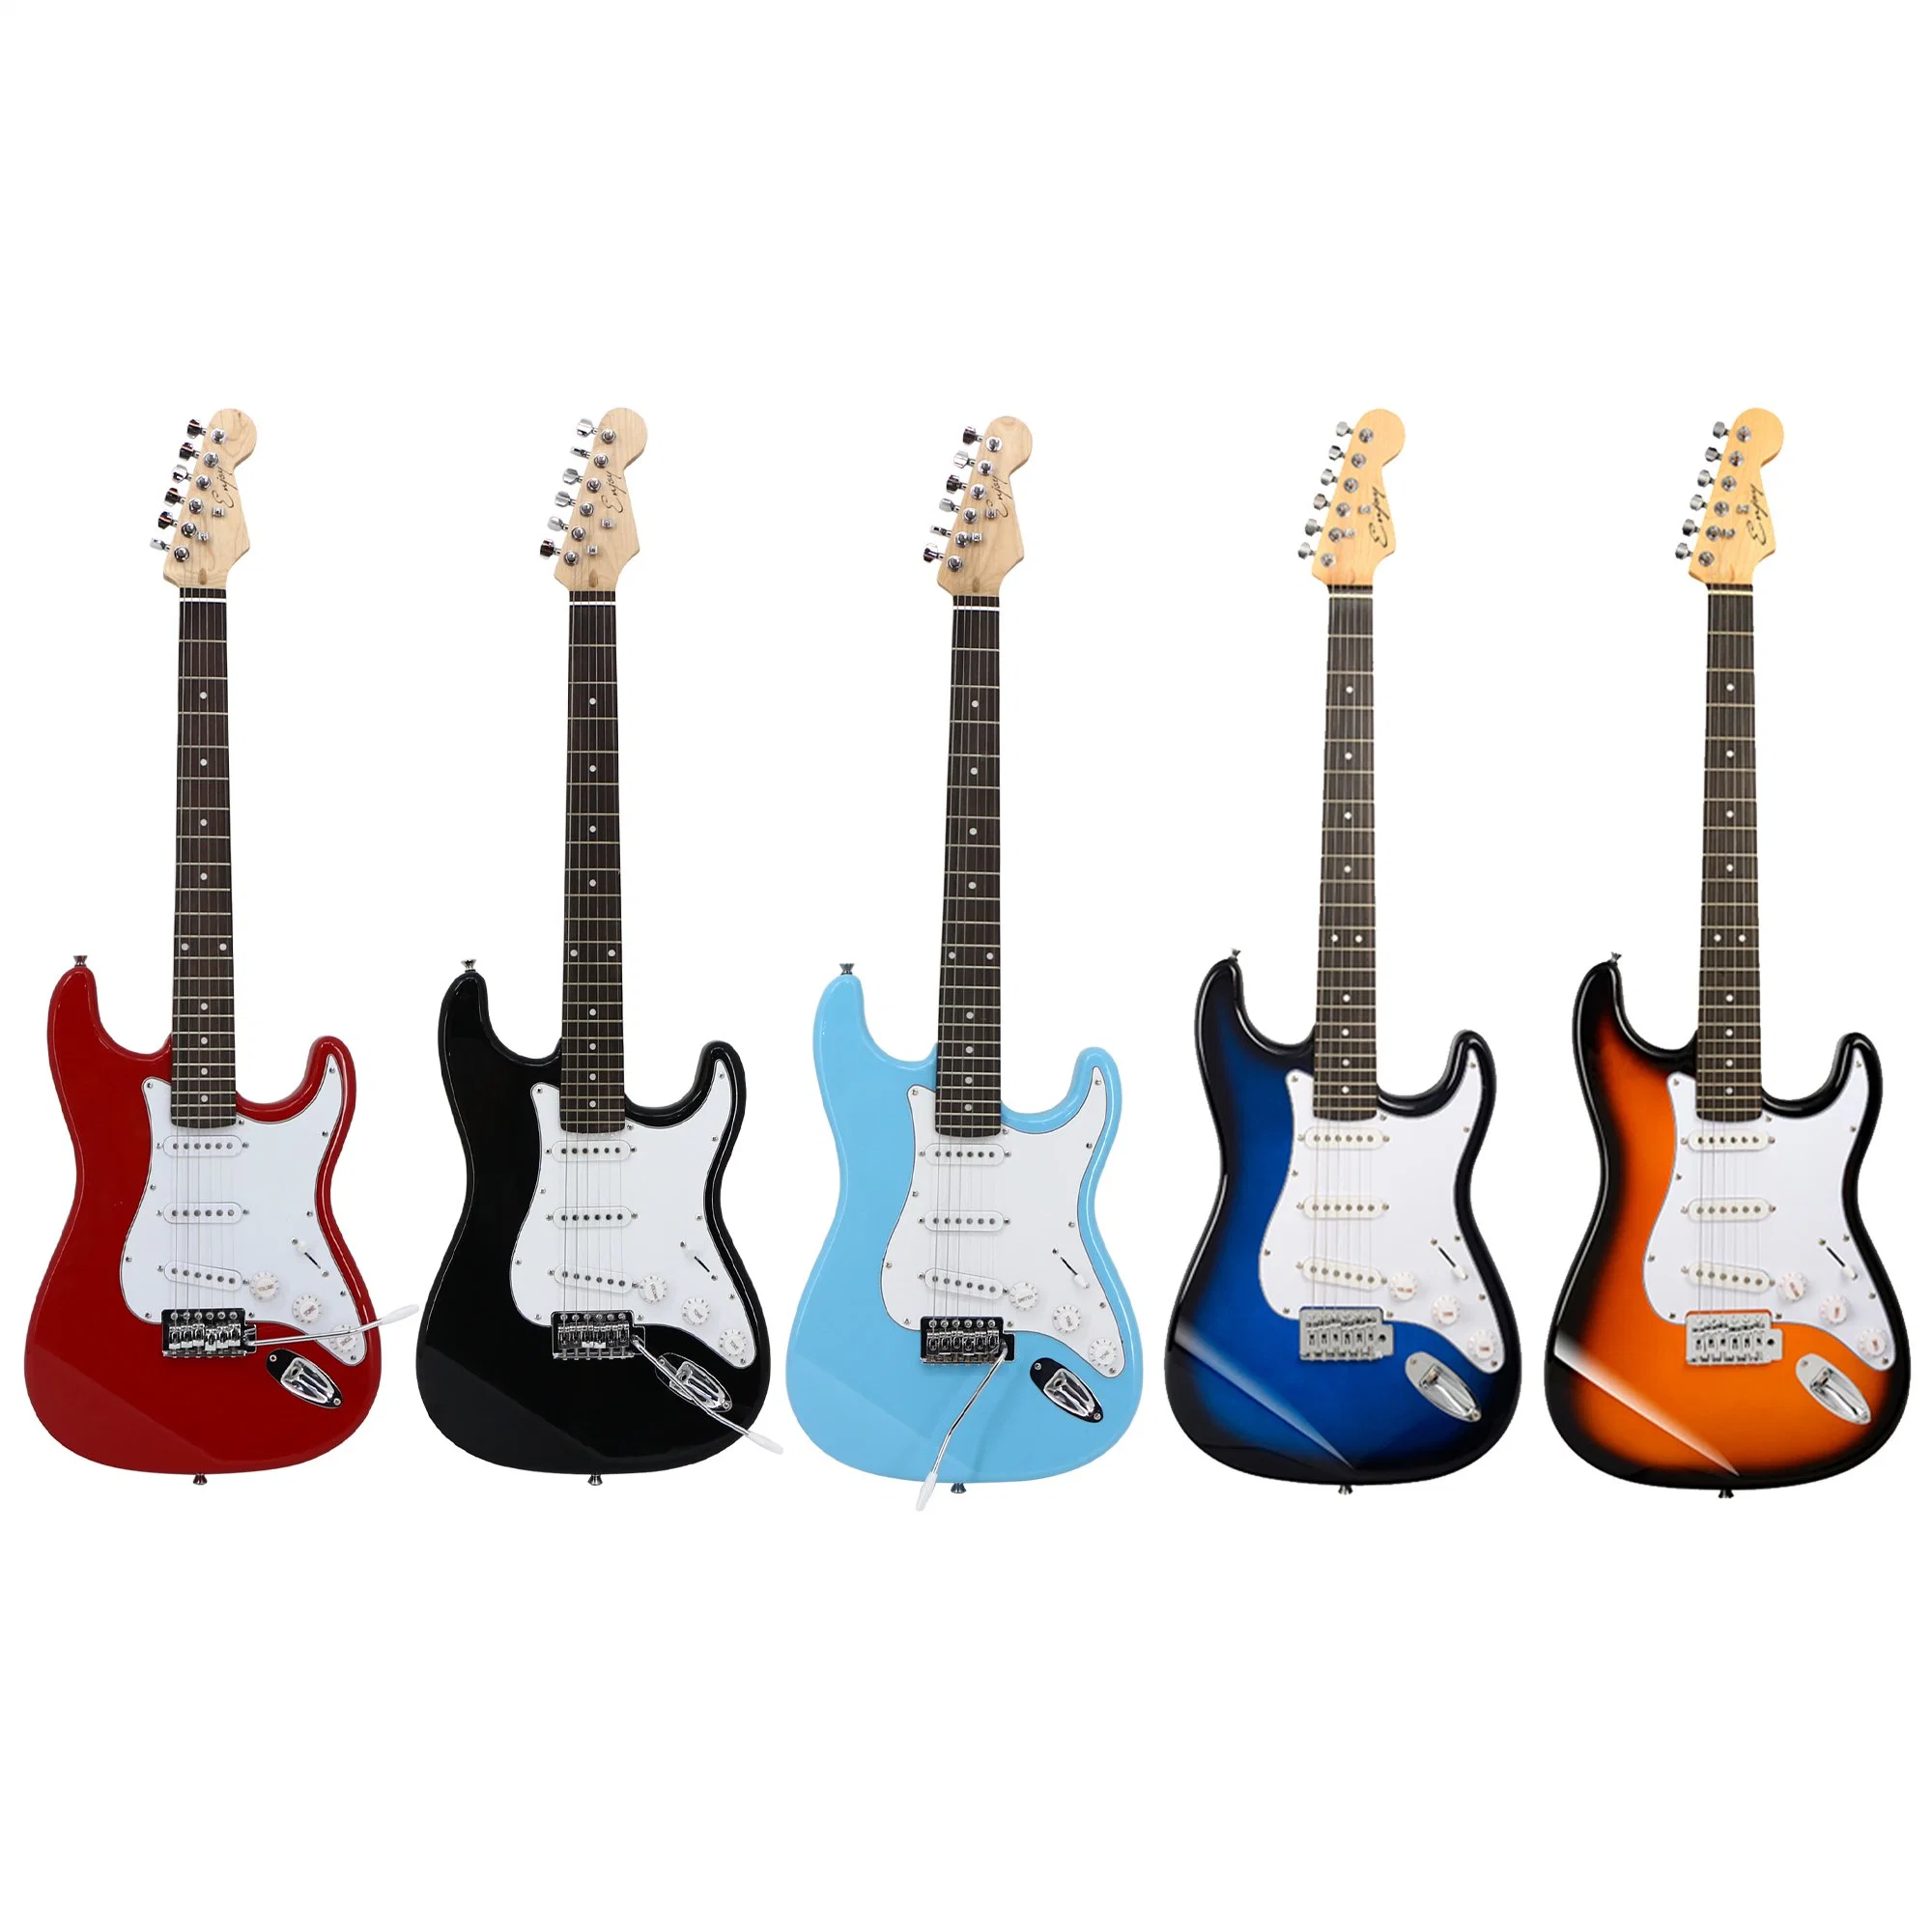 Original Factory Customs Martin Guitar Electronic Jazz Guitar Kit String Musical Instruments Colorful Carbon Fiber St Bass Guitar Electric Guitar